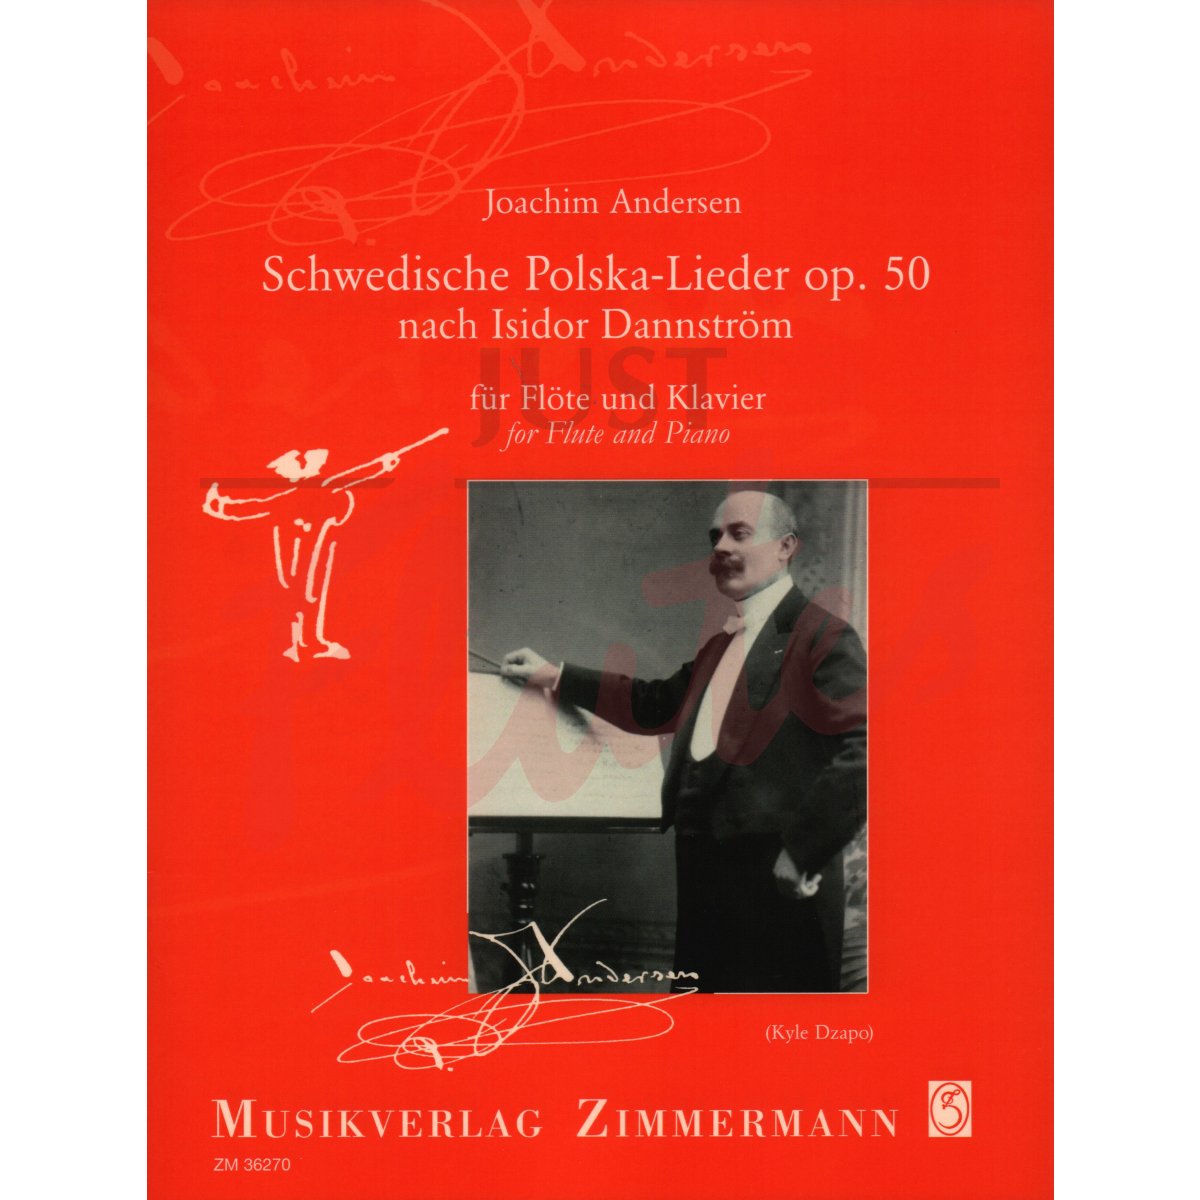 Schwedische Polska-Lieder for Flute and Piano